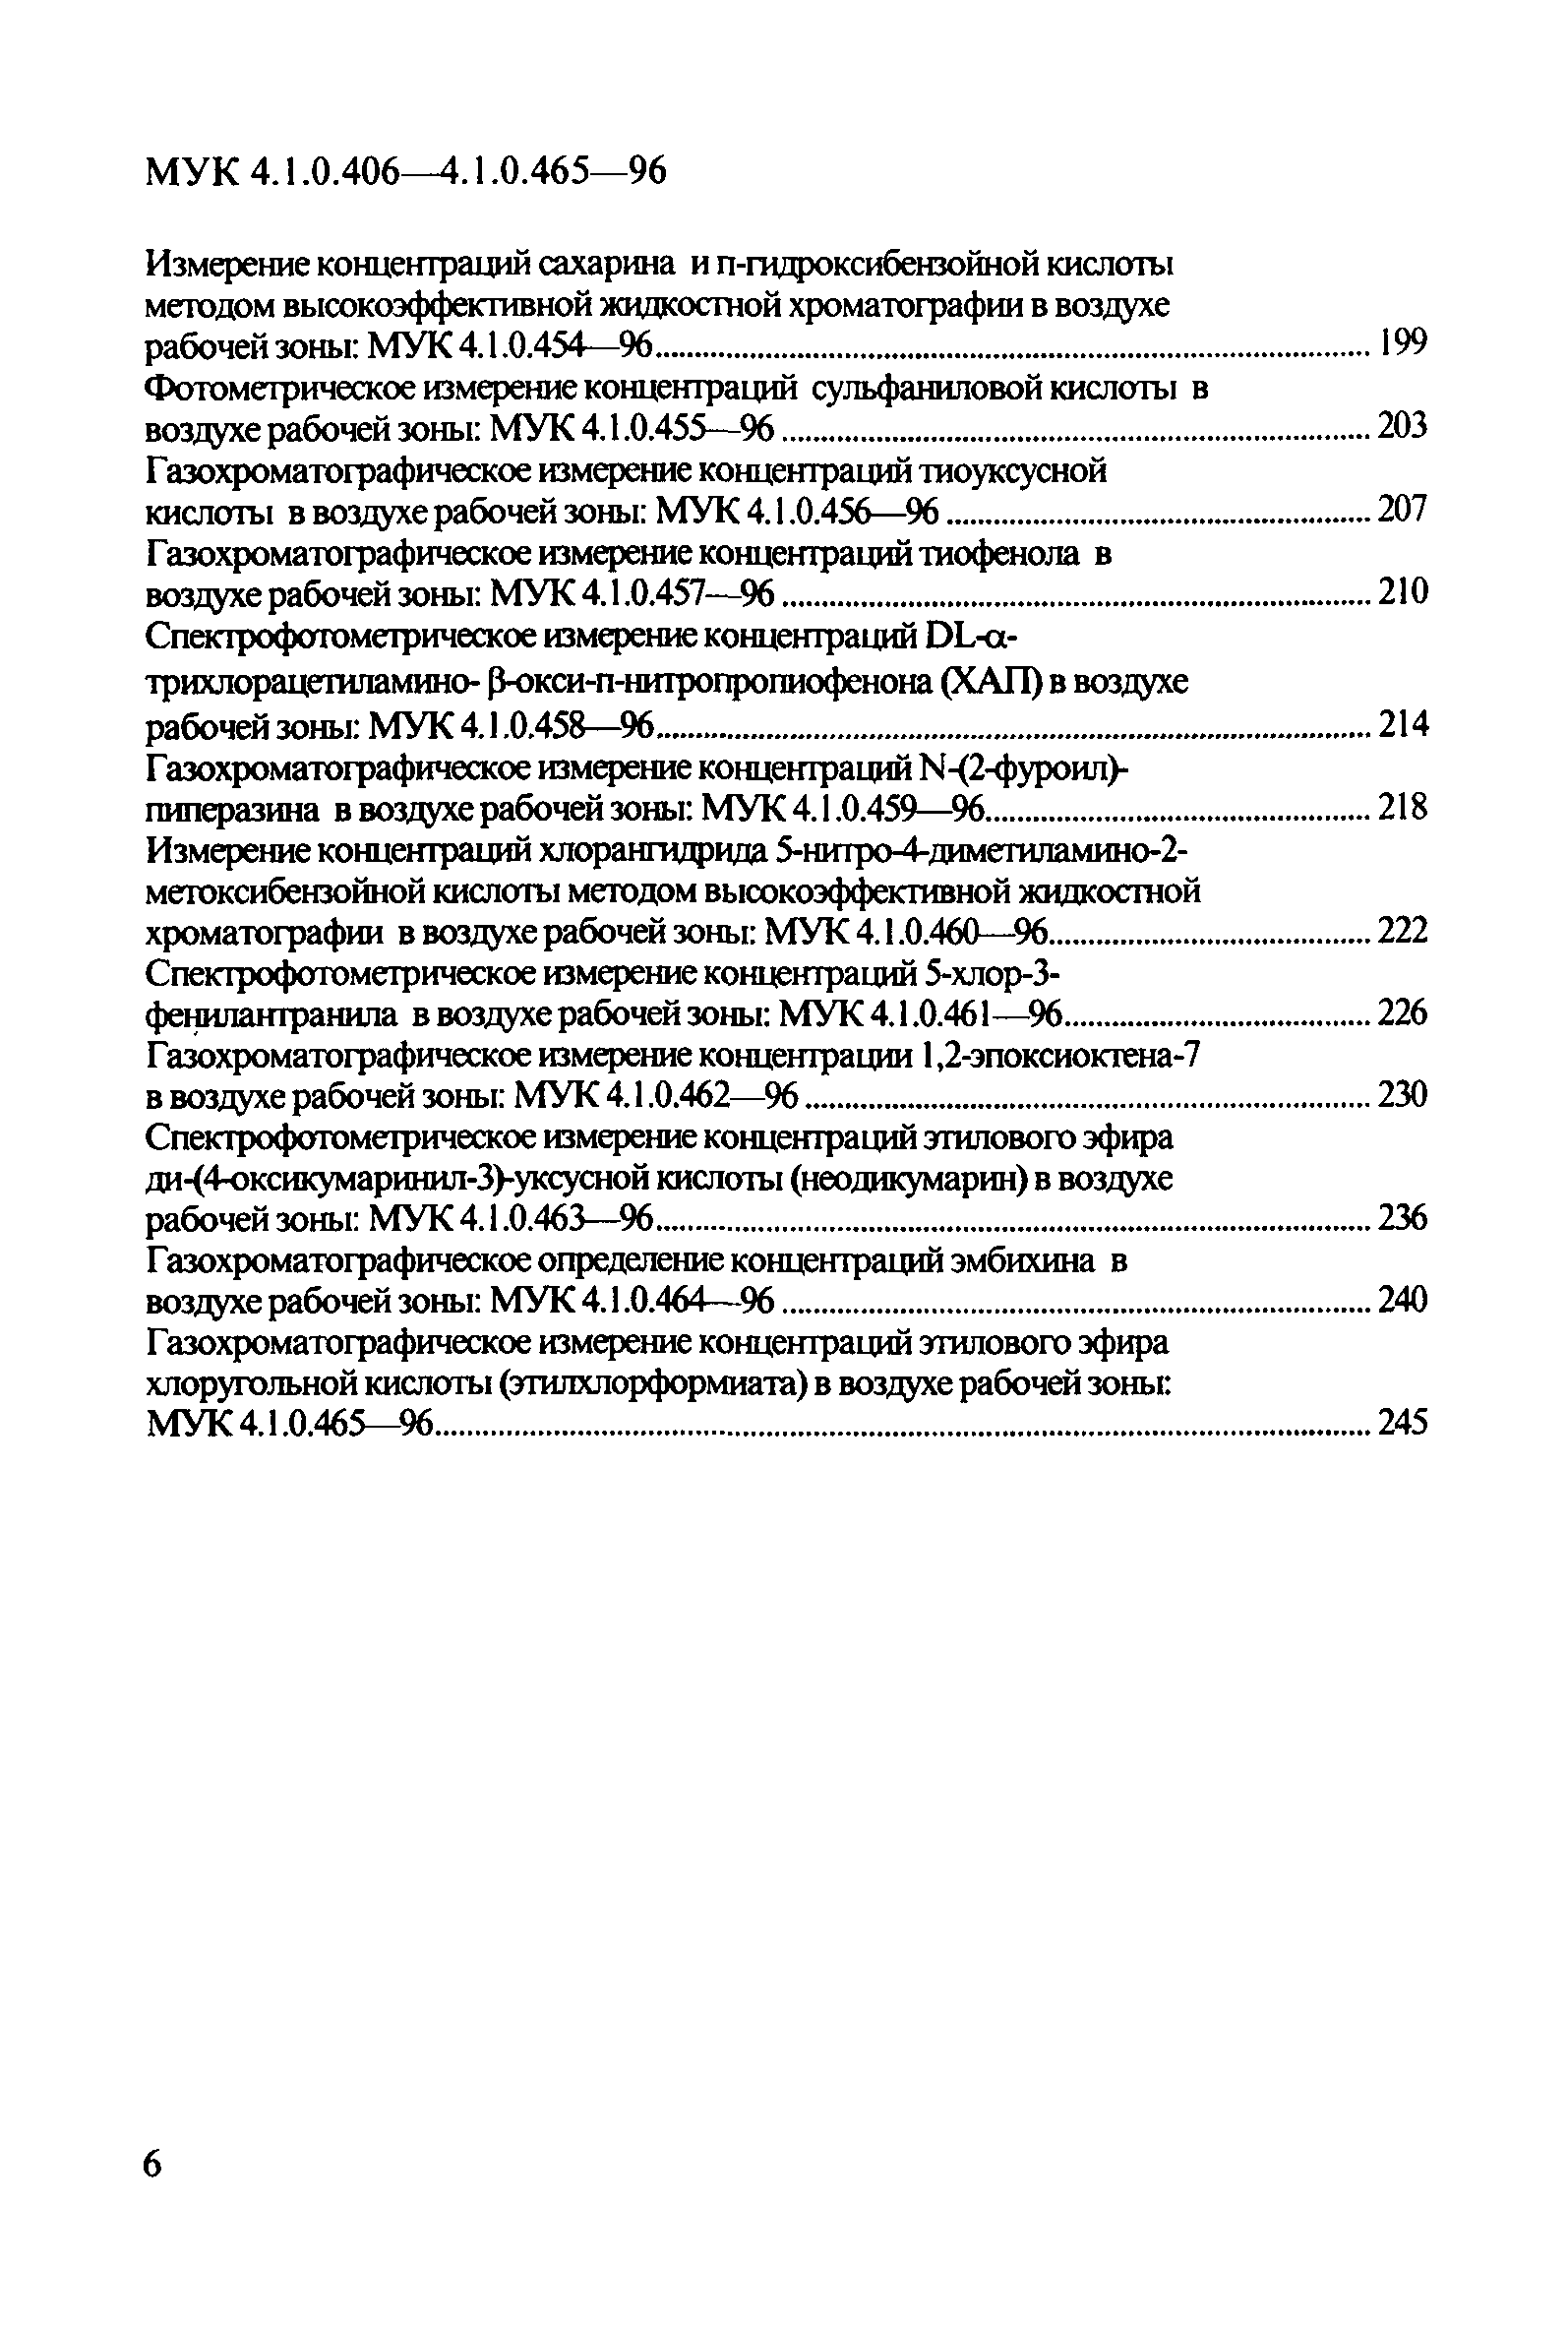 МУК 4.1.0.428-96